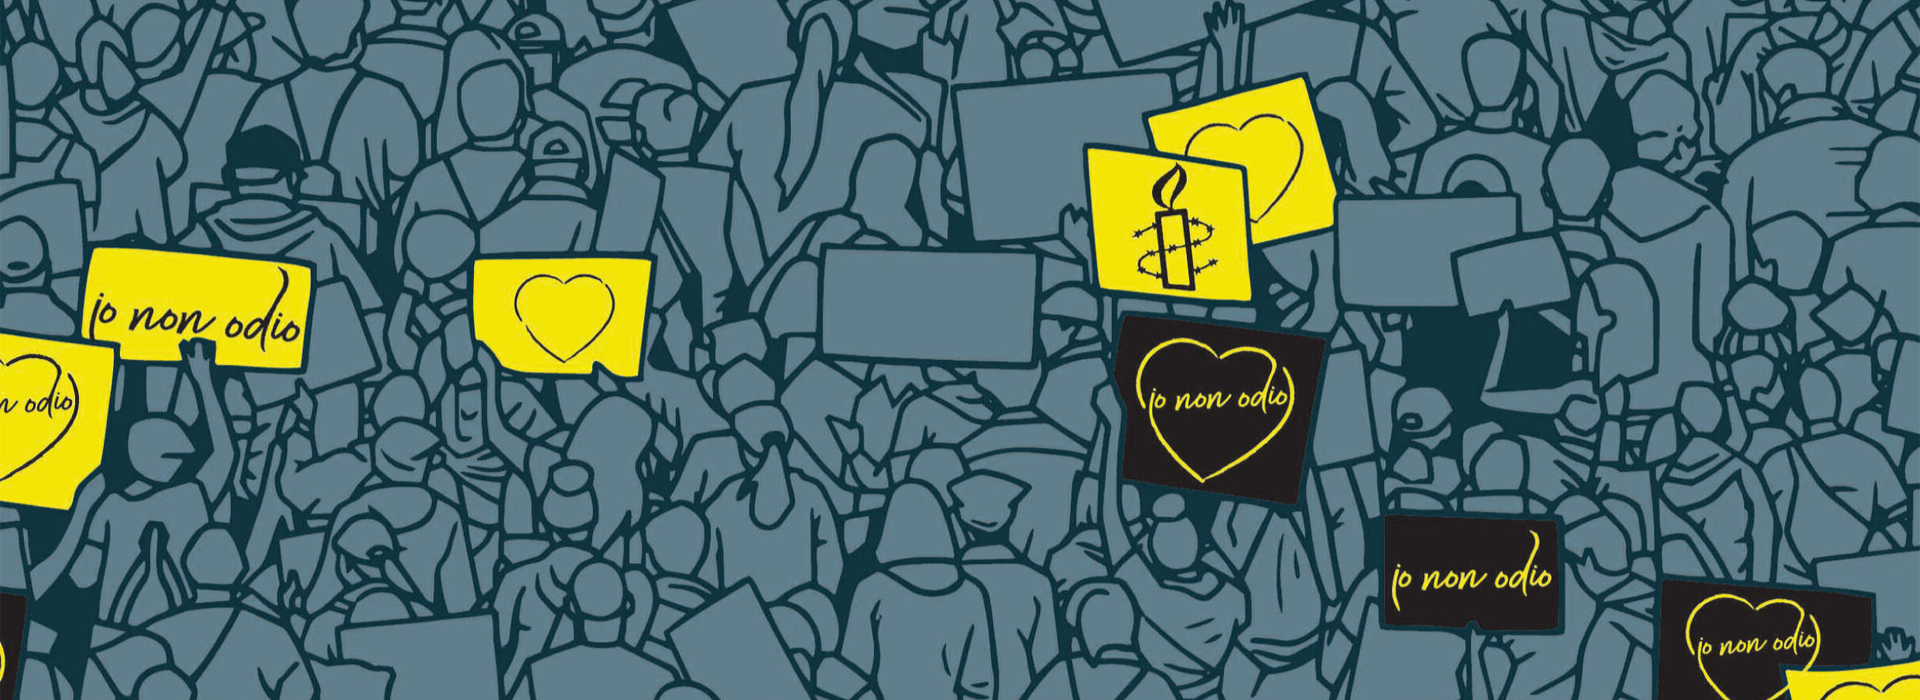 Barometro dell’odio, Amnesty International Italia: “Allarmante delegittimazione del diritto di protesta”